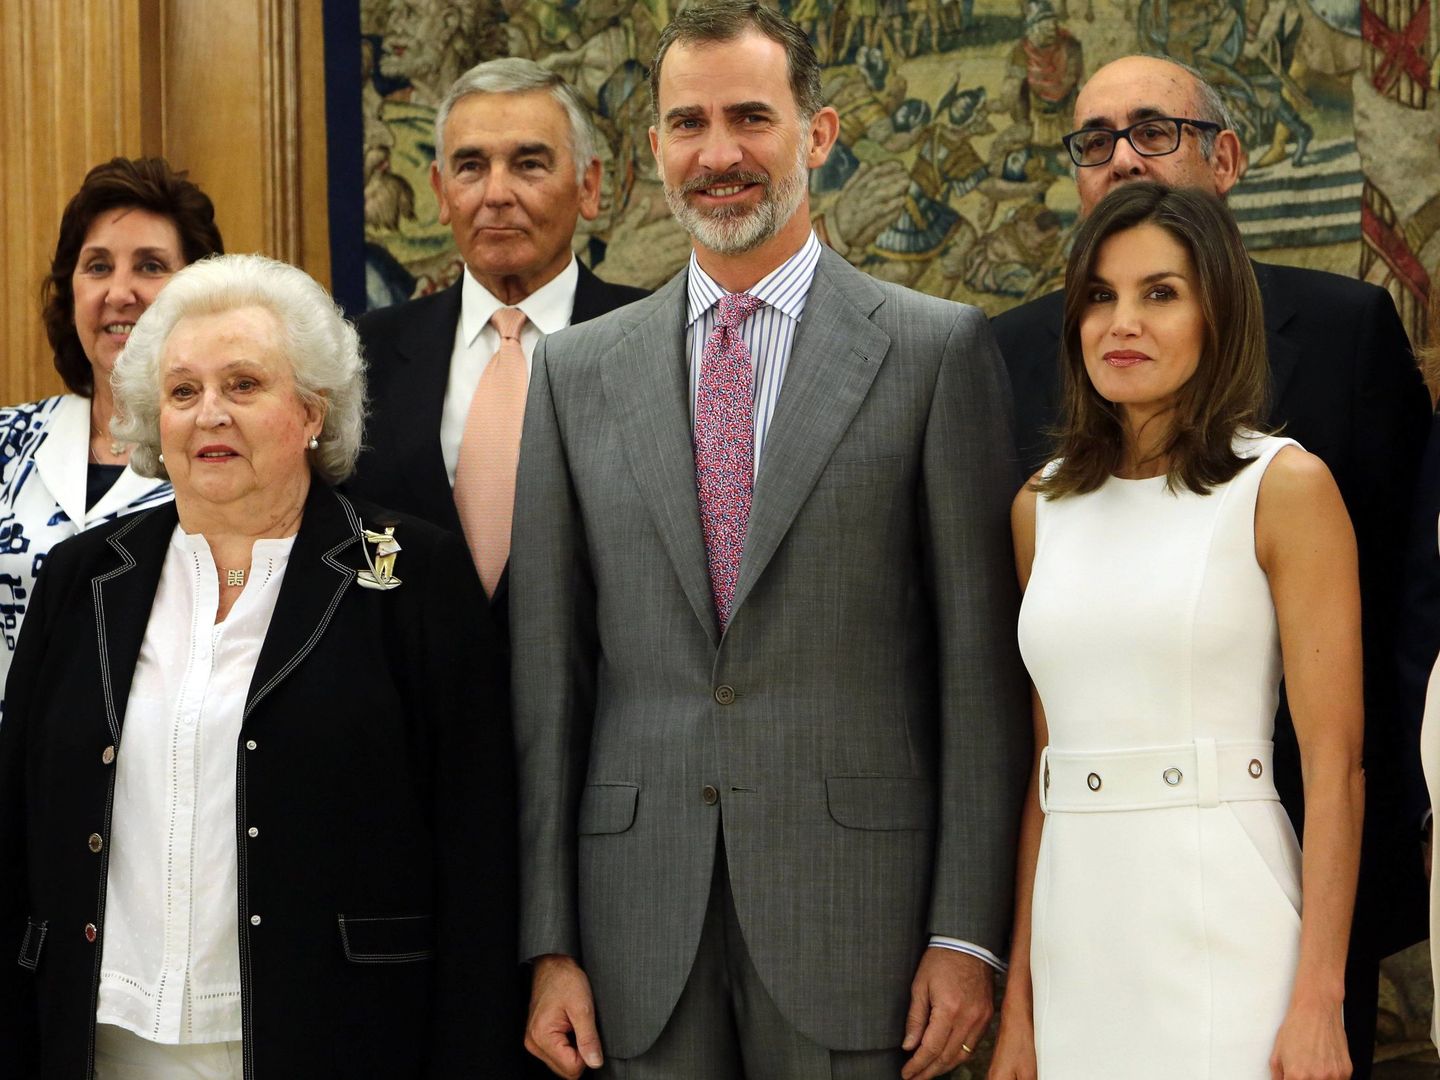 Los Reyes reciben en audiencia a la Asociacion Nuevo Futuro, cuya presidencia de honor ostenta la infanta Pilar. (Cordon)